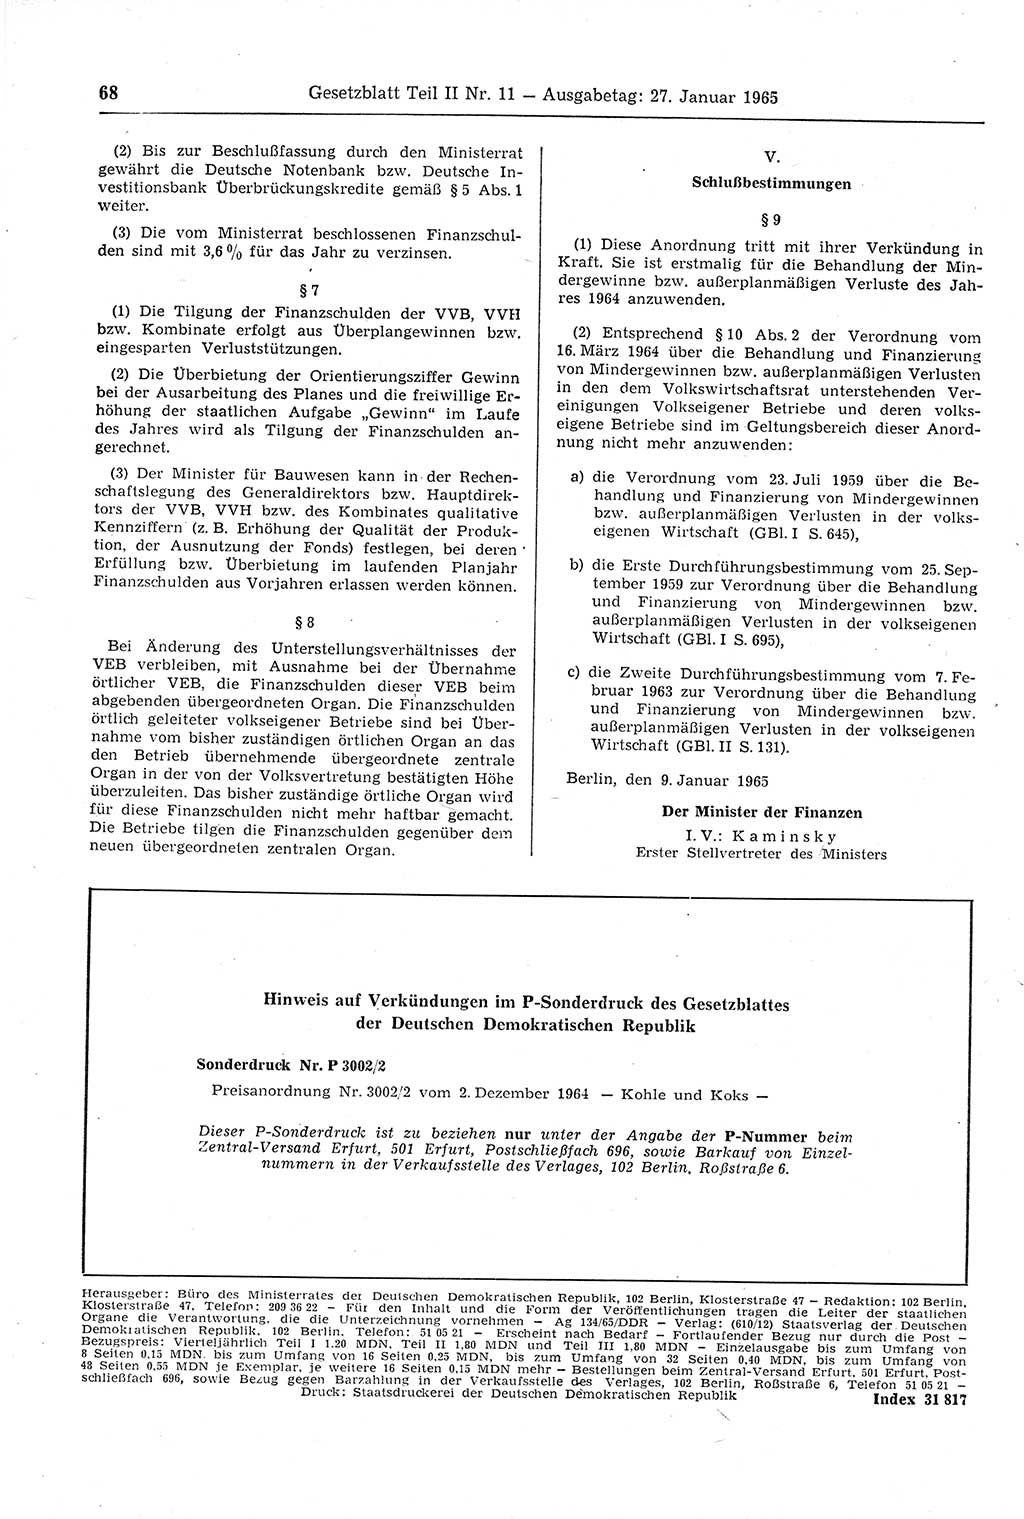 Gesetzblatt (GBl.) der Deutschen Demokratischen Republik (DDR) Teil ⅠⅠ 1965, Seite 68 (GBl. DDR ⅠⅠ 1965, S. 68)